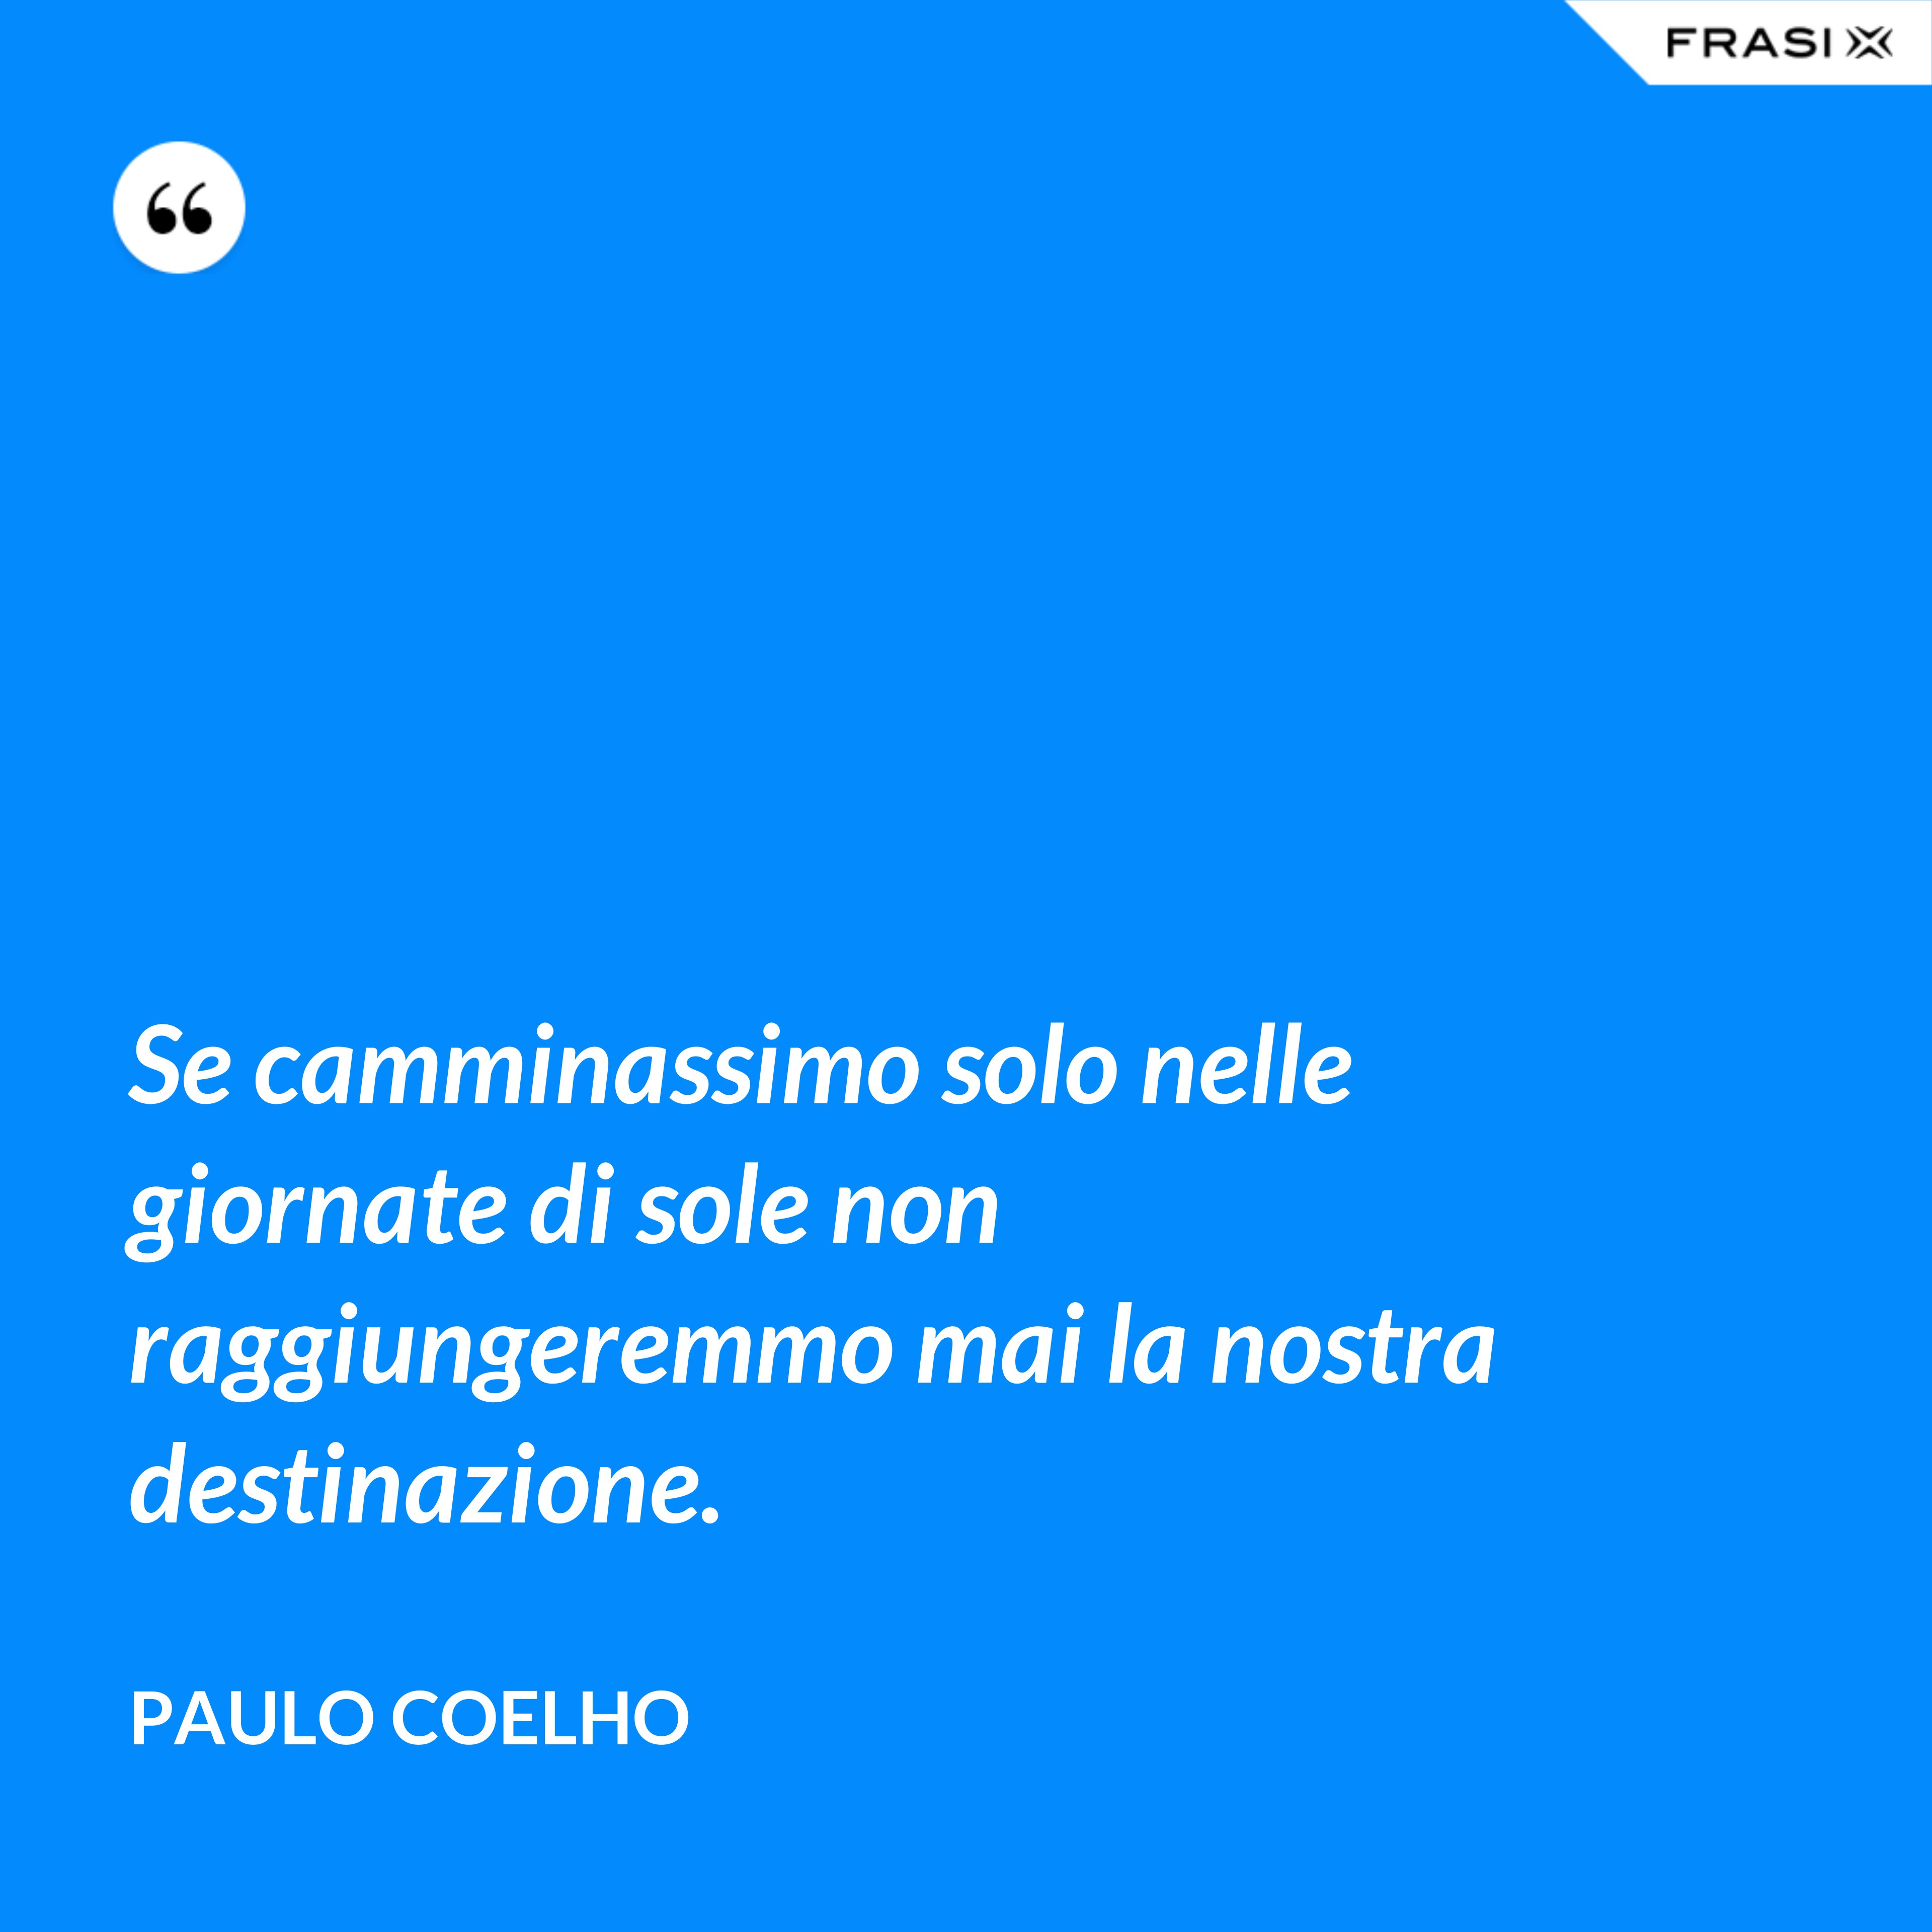 Se camminassimo solo nelle giornate di sole non raggiungeremmo mai la nostra destinazione. - Paulo Coelho